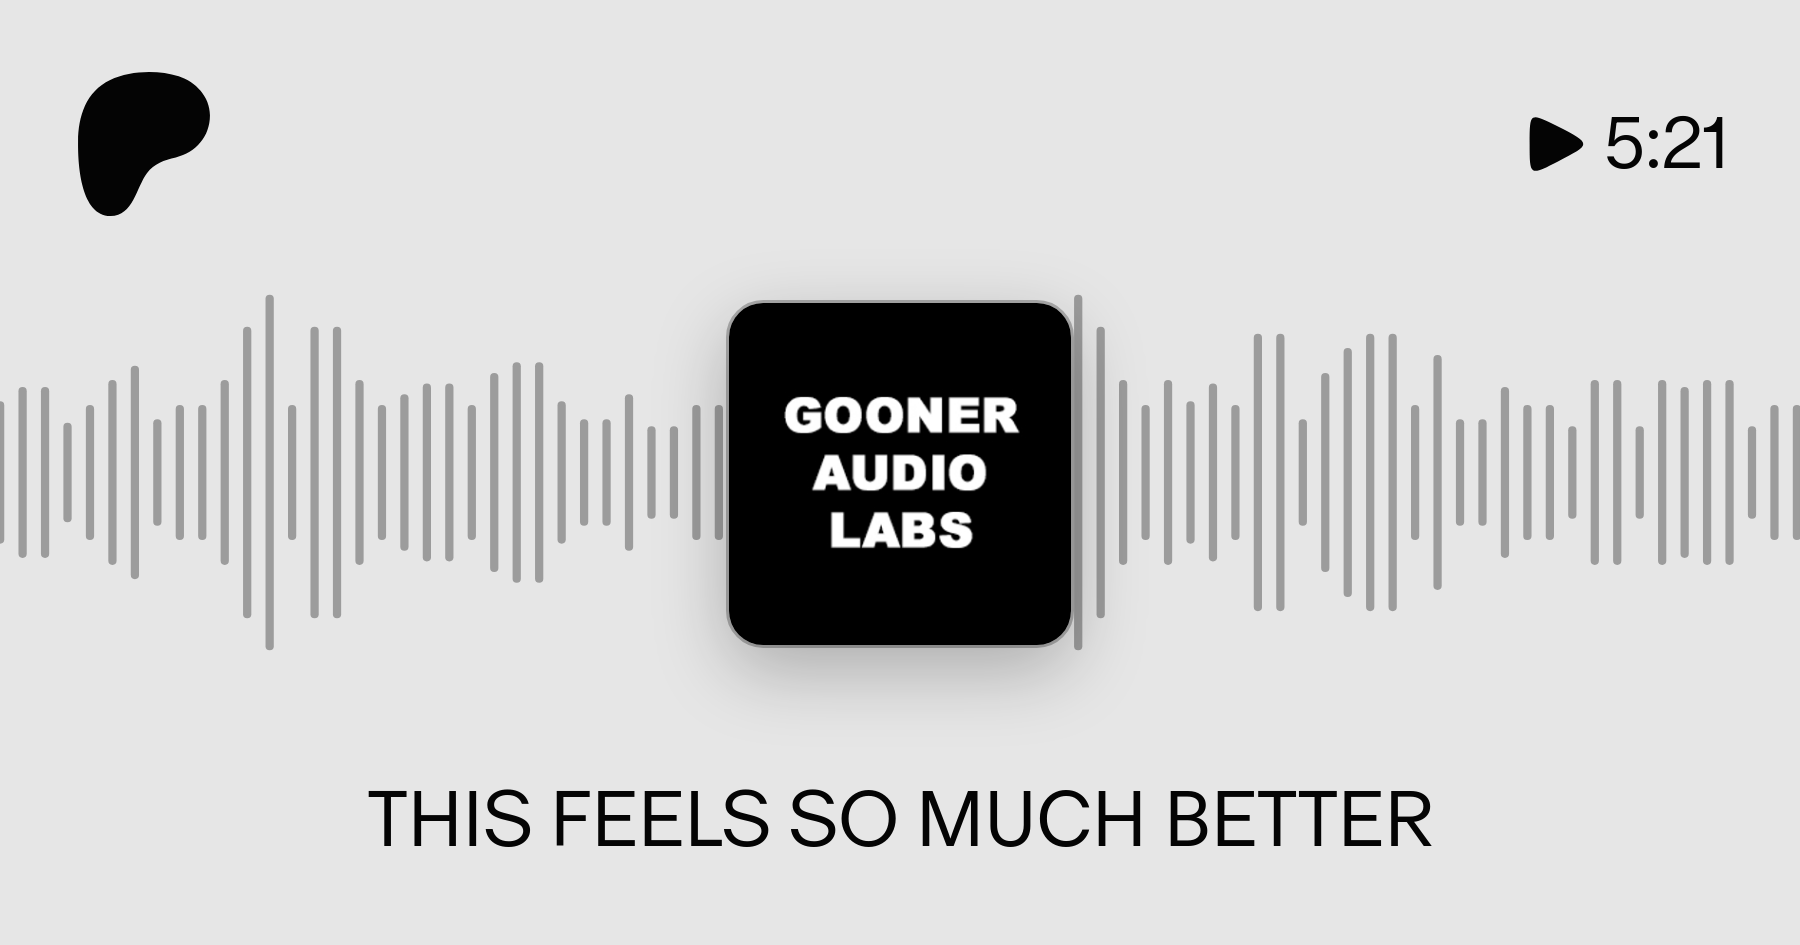 Gooner audio